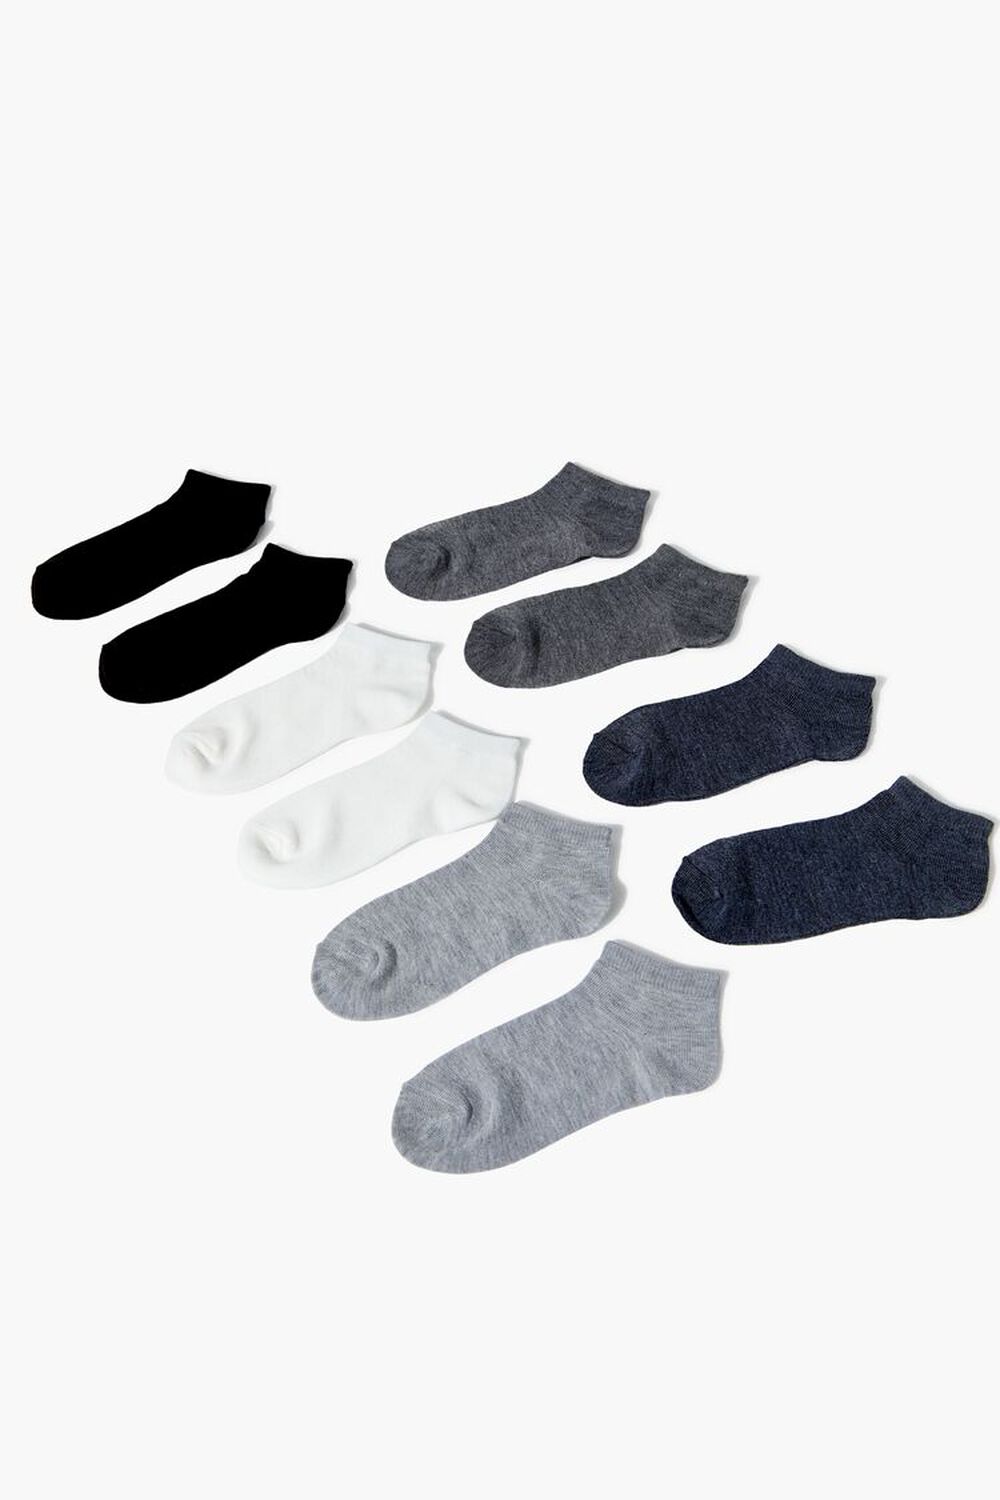 Kids Ankle Socks Set - 5 pack (Girls + Boys)